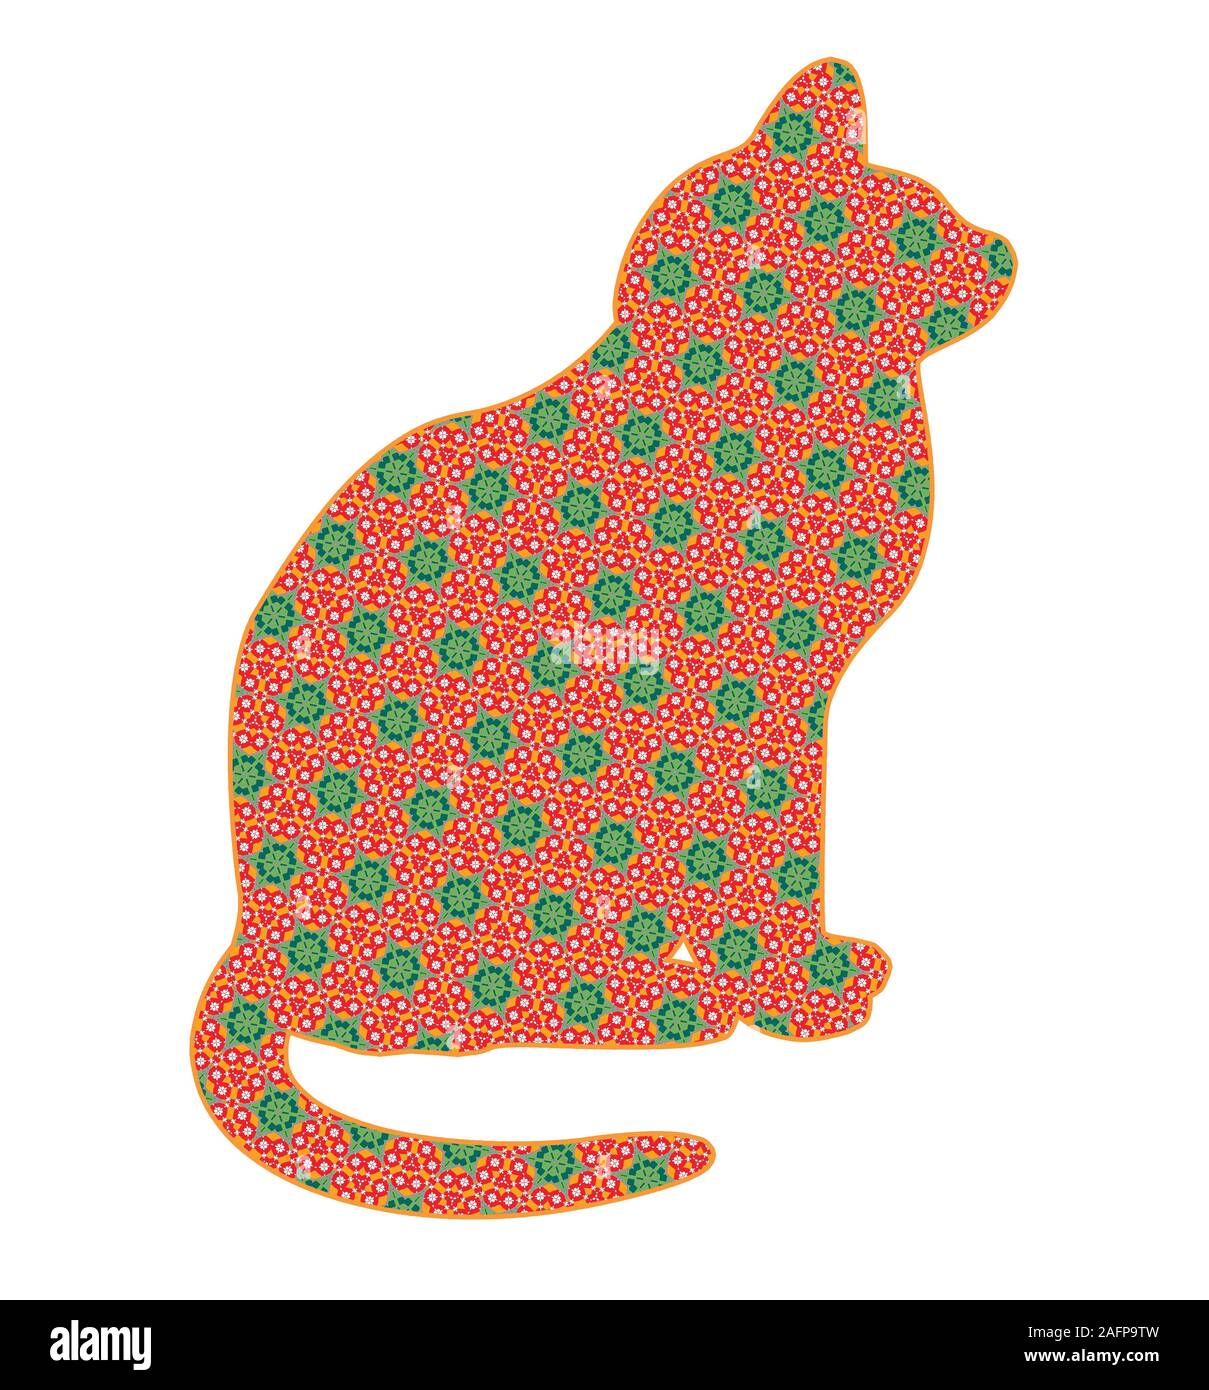 Grün und rot witzig gemusterte Weihnachtskatze für die Weihnachtszeit, eine schrullige künstlerische Grafik-Design Ressource Ausschnitt auf weiß isoliert Stockfoto